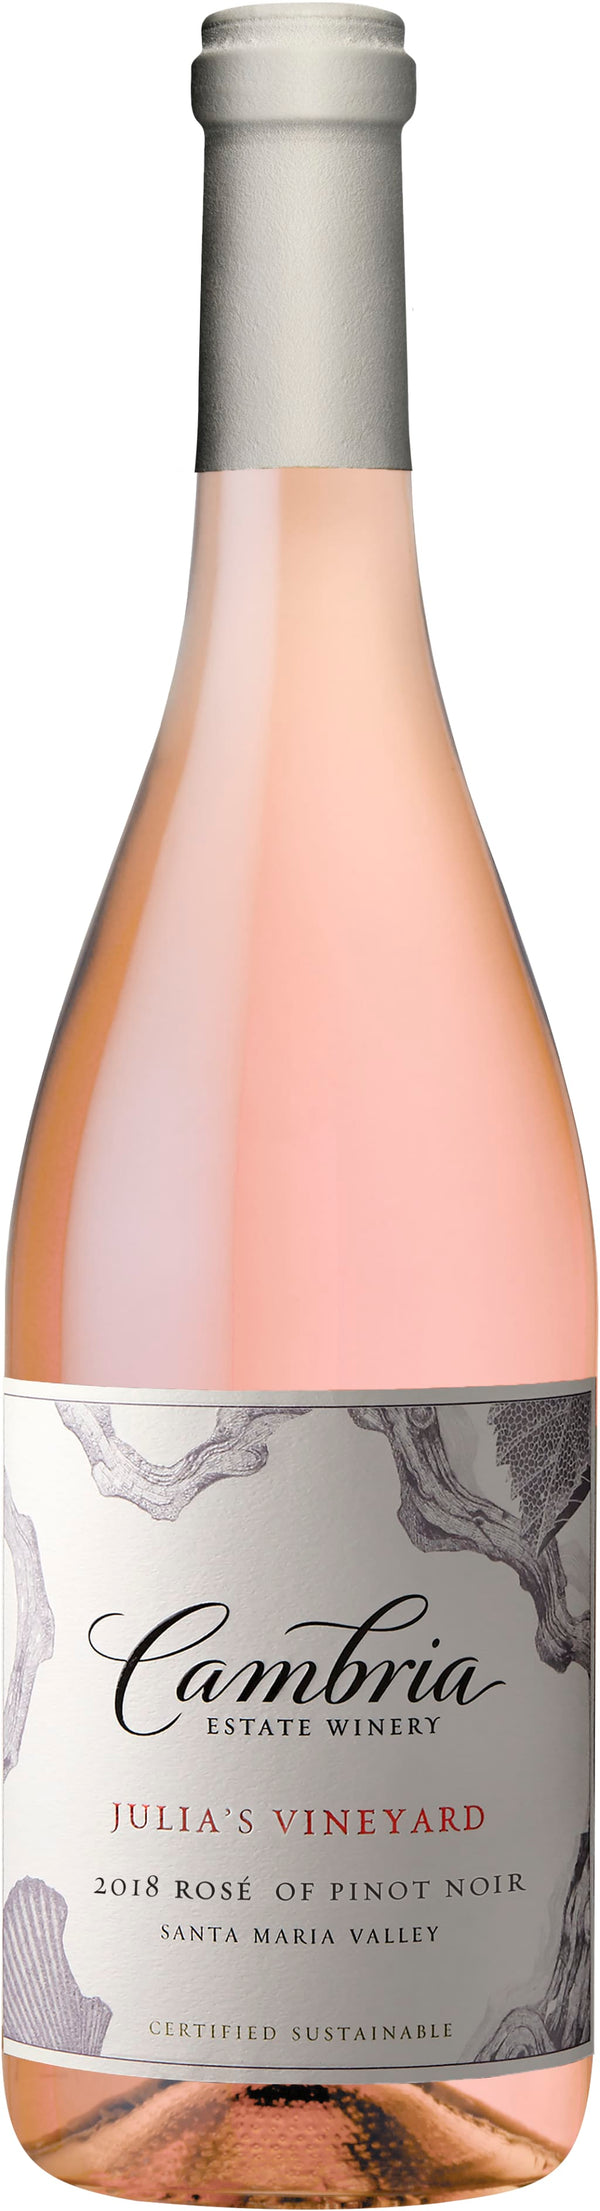 Cambria Rosé of Pinot Noir, Santa Maria Valley